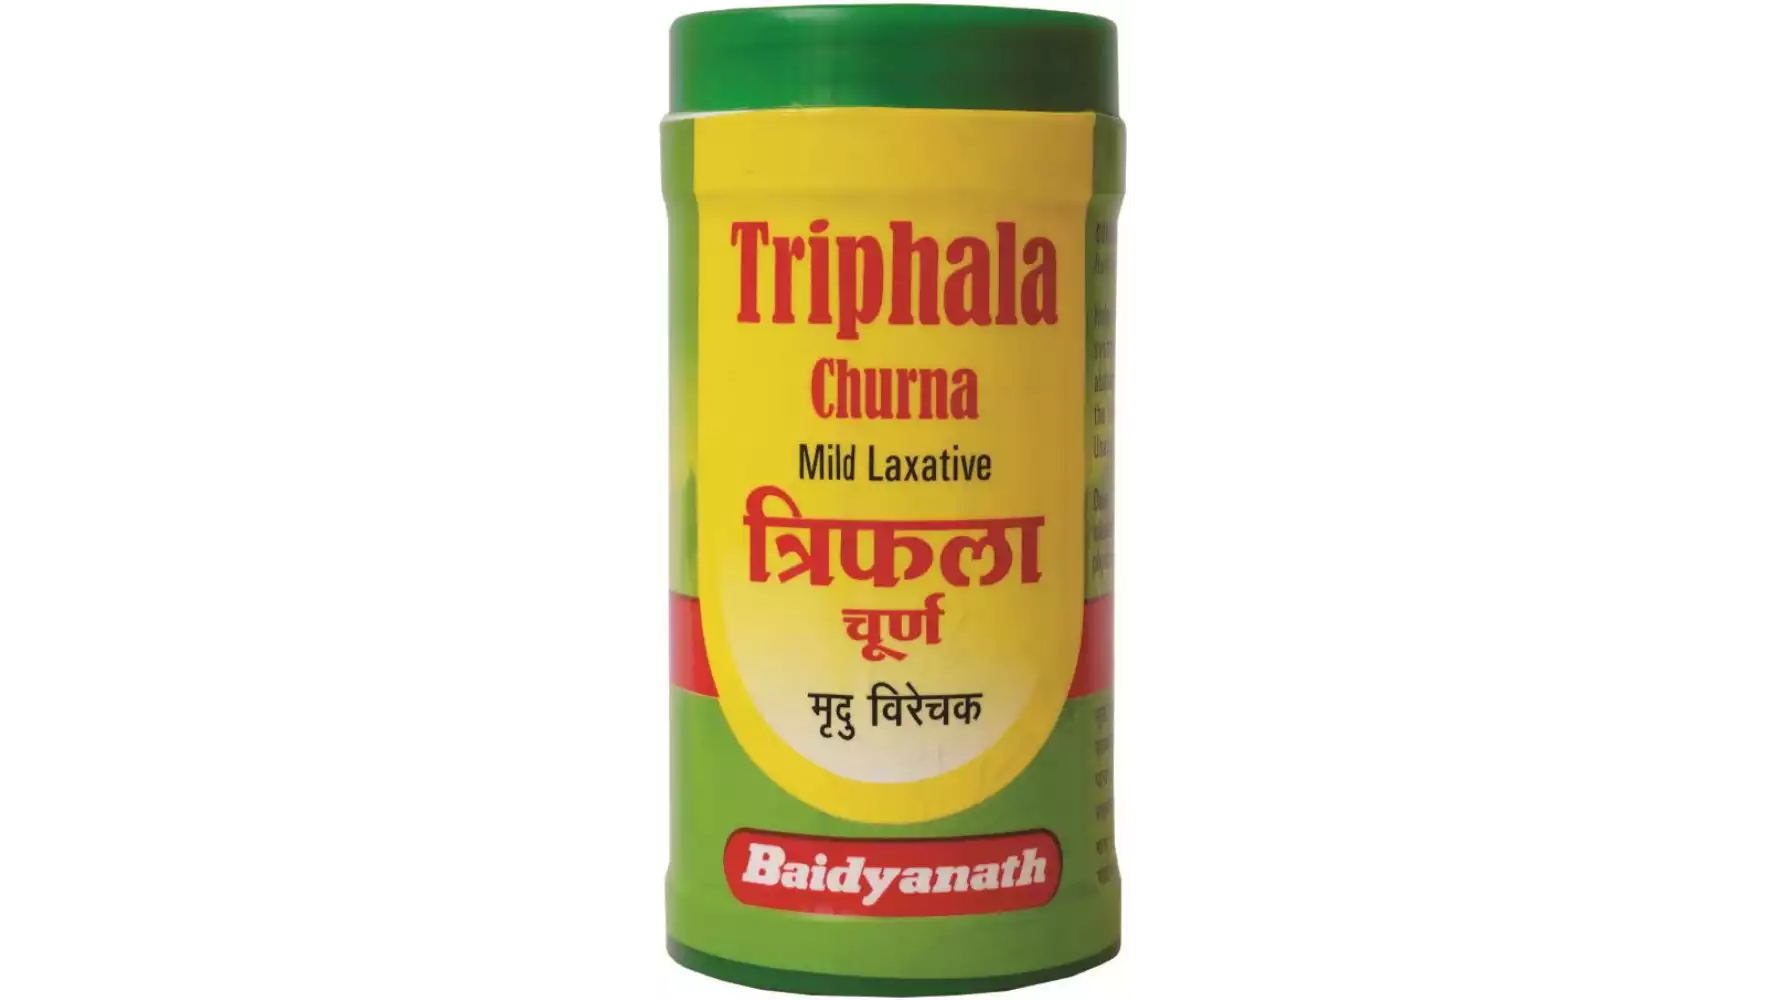 Baidyanath (Nagpur) Triphala Churna (50g)